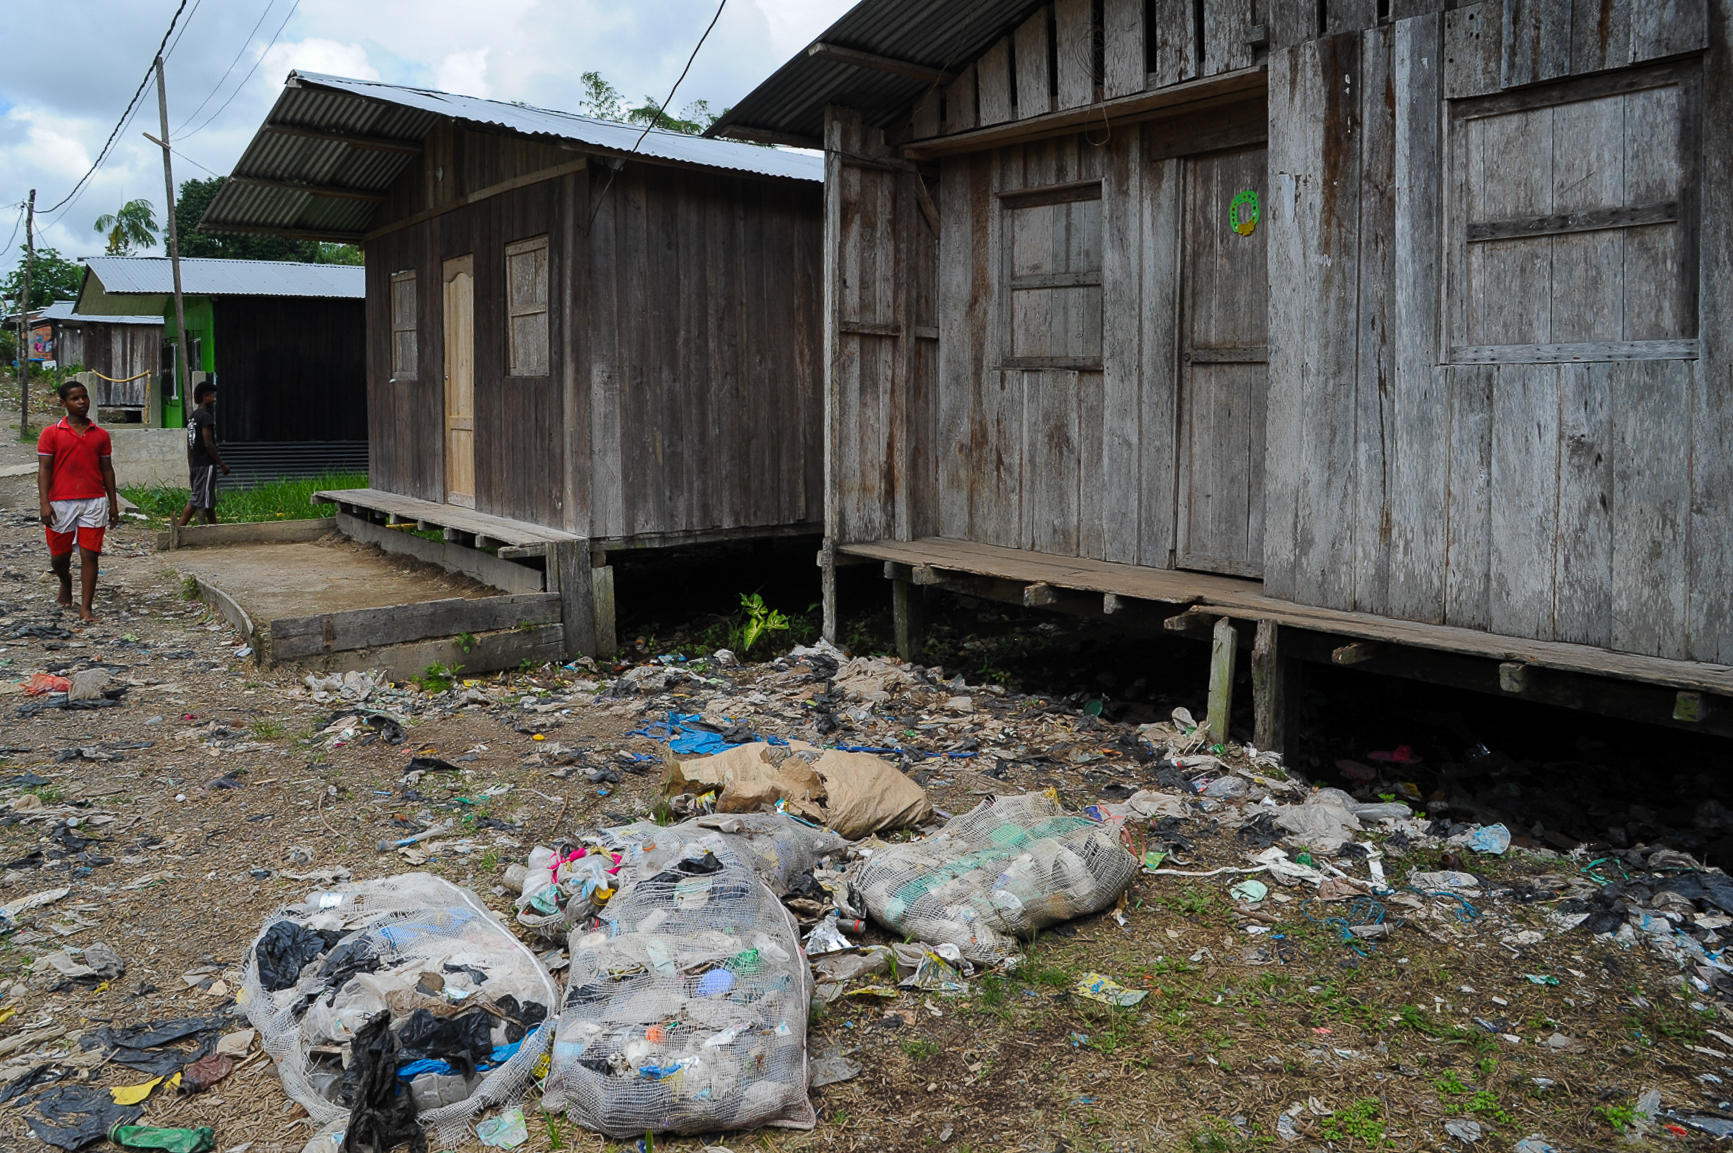 rifiuti per terra all esterno di baracche di legno